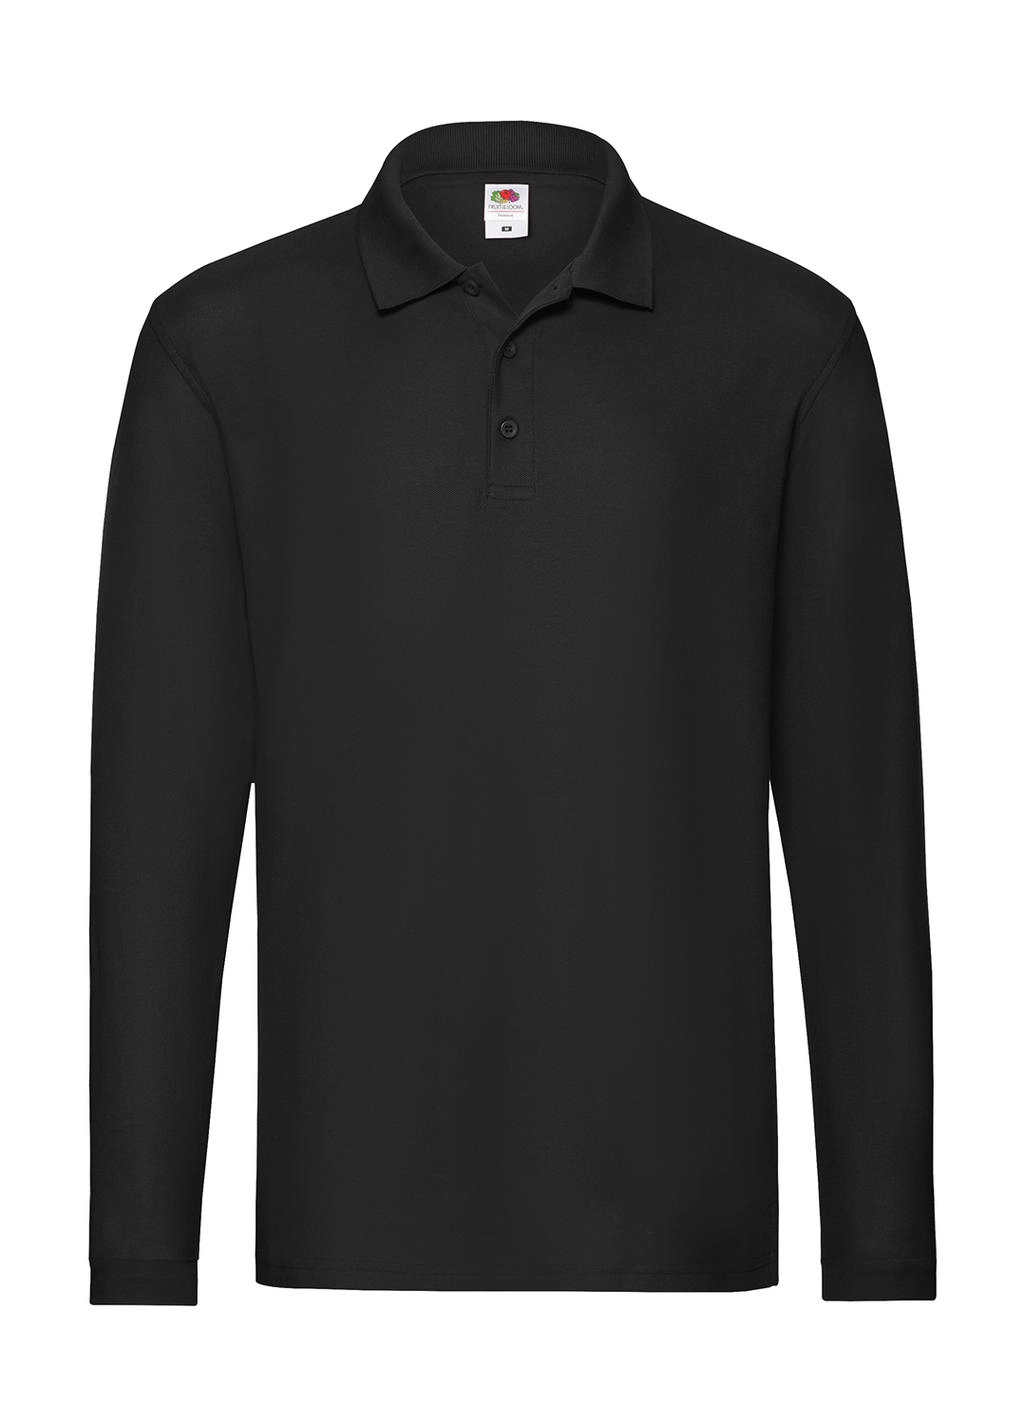 Premium Long Sleeve Polo zum Besticken und Bedrucken in der Farbe Black mit Ihren Logo, Schriftzug oder Motiv.